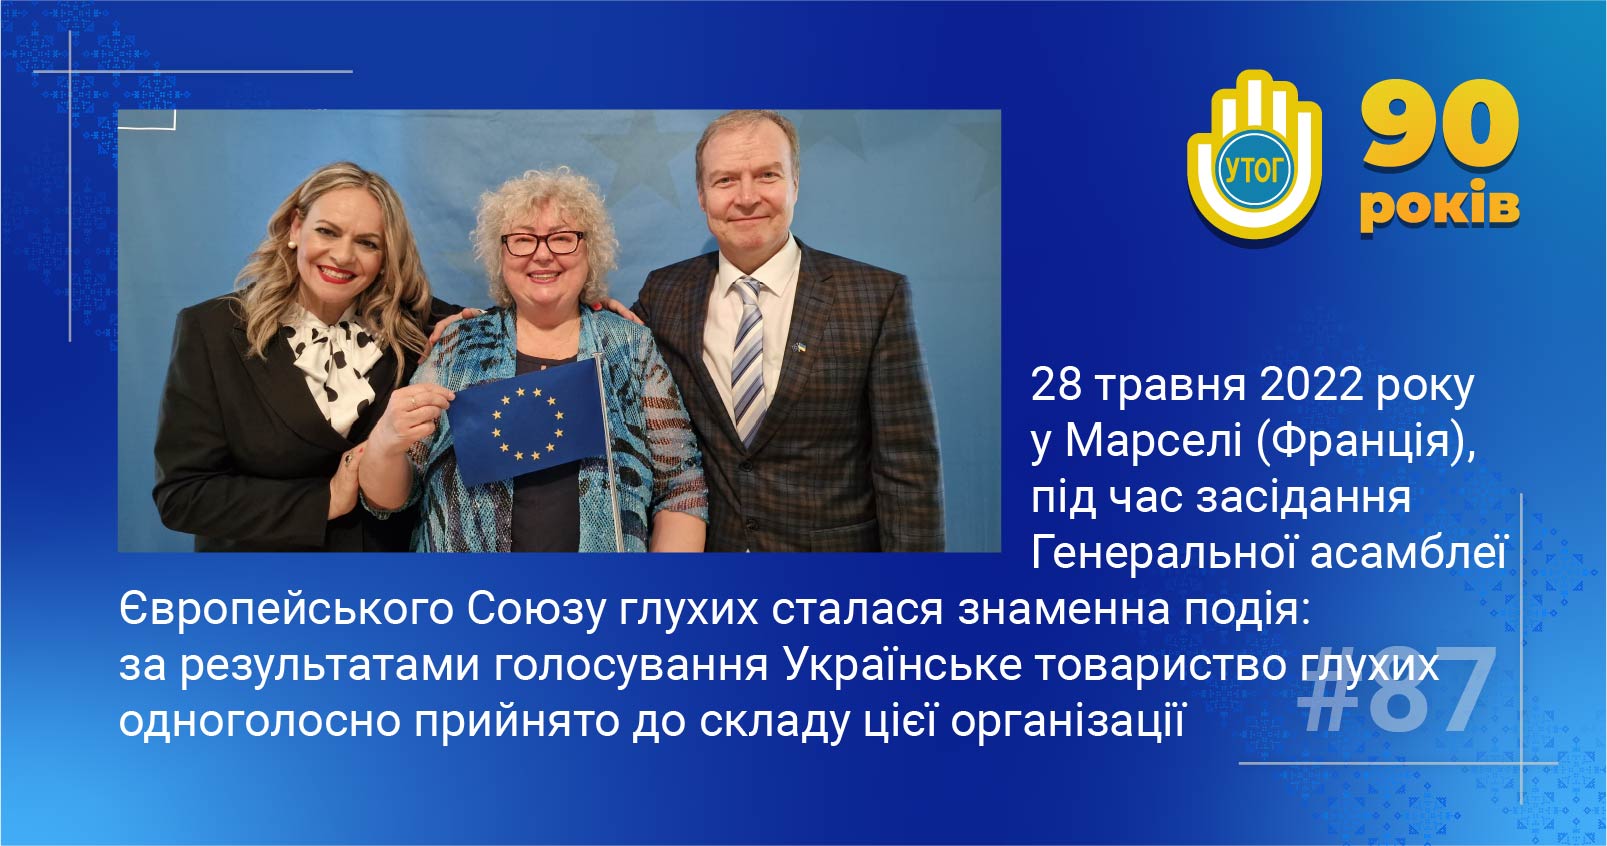 87. 28 травня 2022  року у Марселі (Франція), під час засідання Генеральної асамблеї Європейського Союзу глухих сталася знаменна подія: за результатами голосування Українське товариство глухих одноголосно  прийнято до складу цієї організації